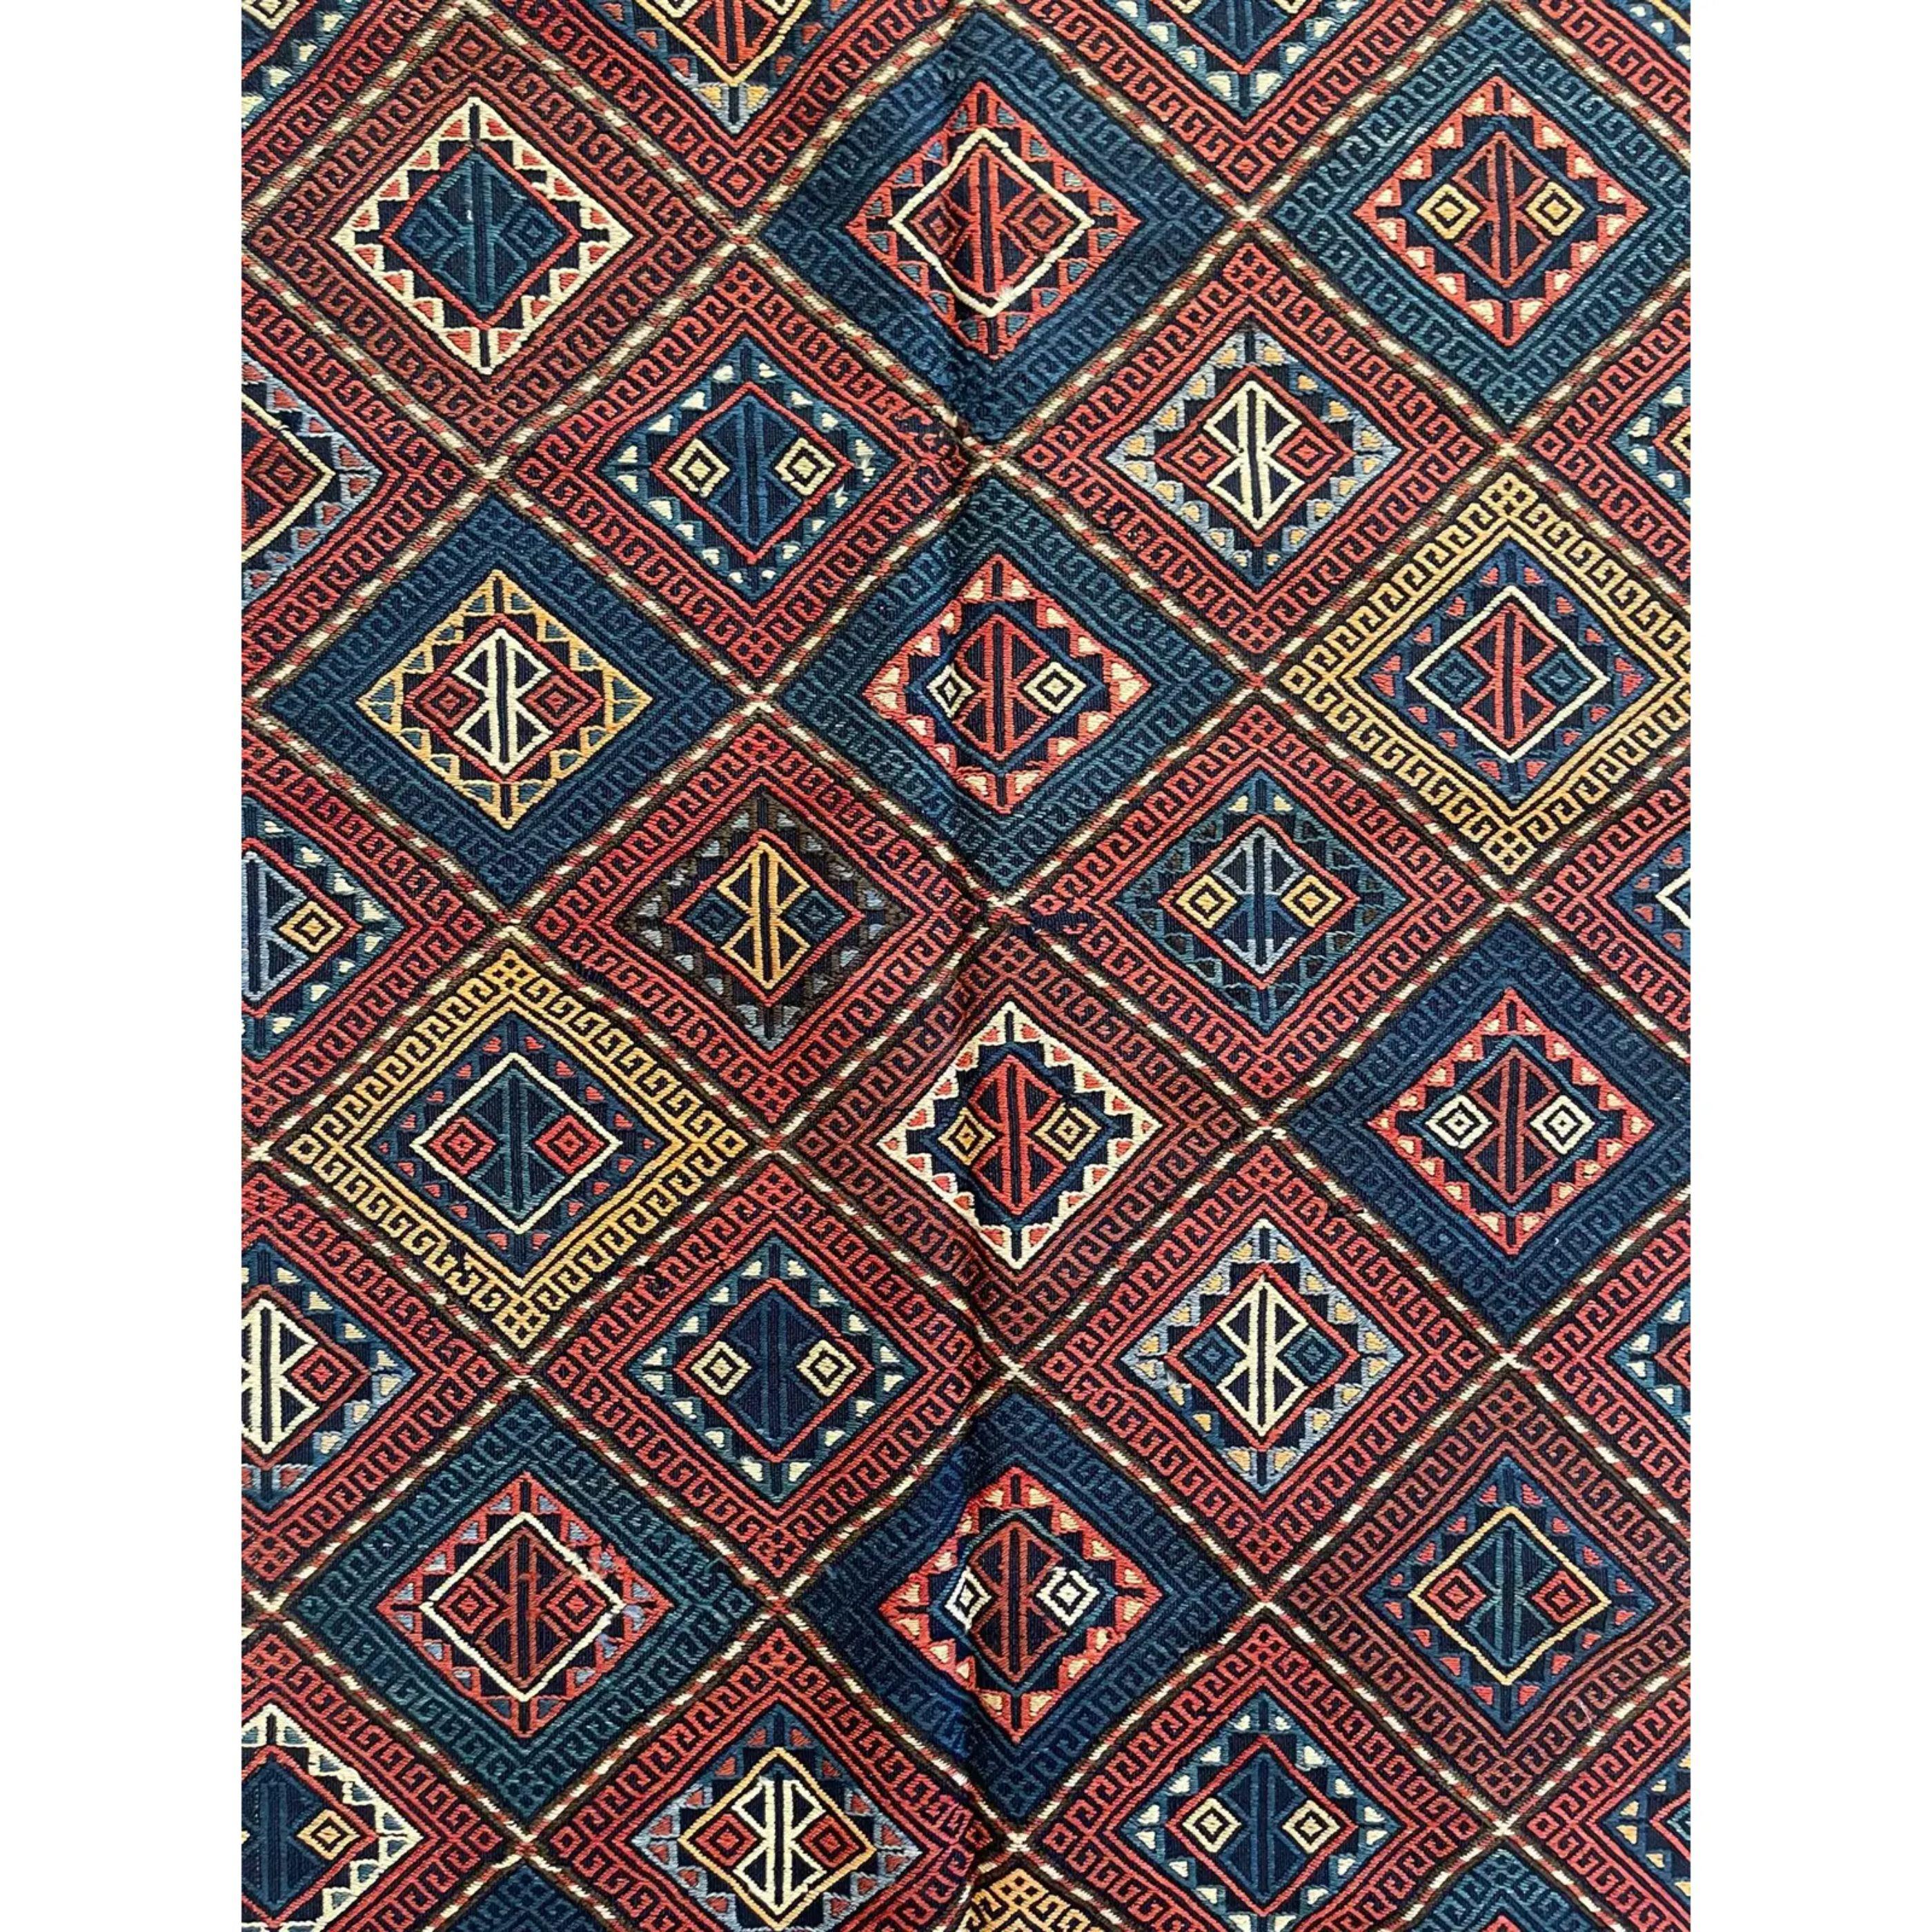 Soumak-Teppiche (auch Sumak genannt) - Bei dieser Konstruktionstechnik wird ein flach gewebter Teppich hergestellt, der dick, stark und außergewöhnlich haltbar ist. Im Gegensatz zu Kelims sind Soumak-Teppiche nicht wendbar, da die nicht